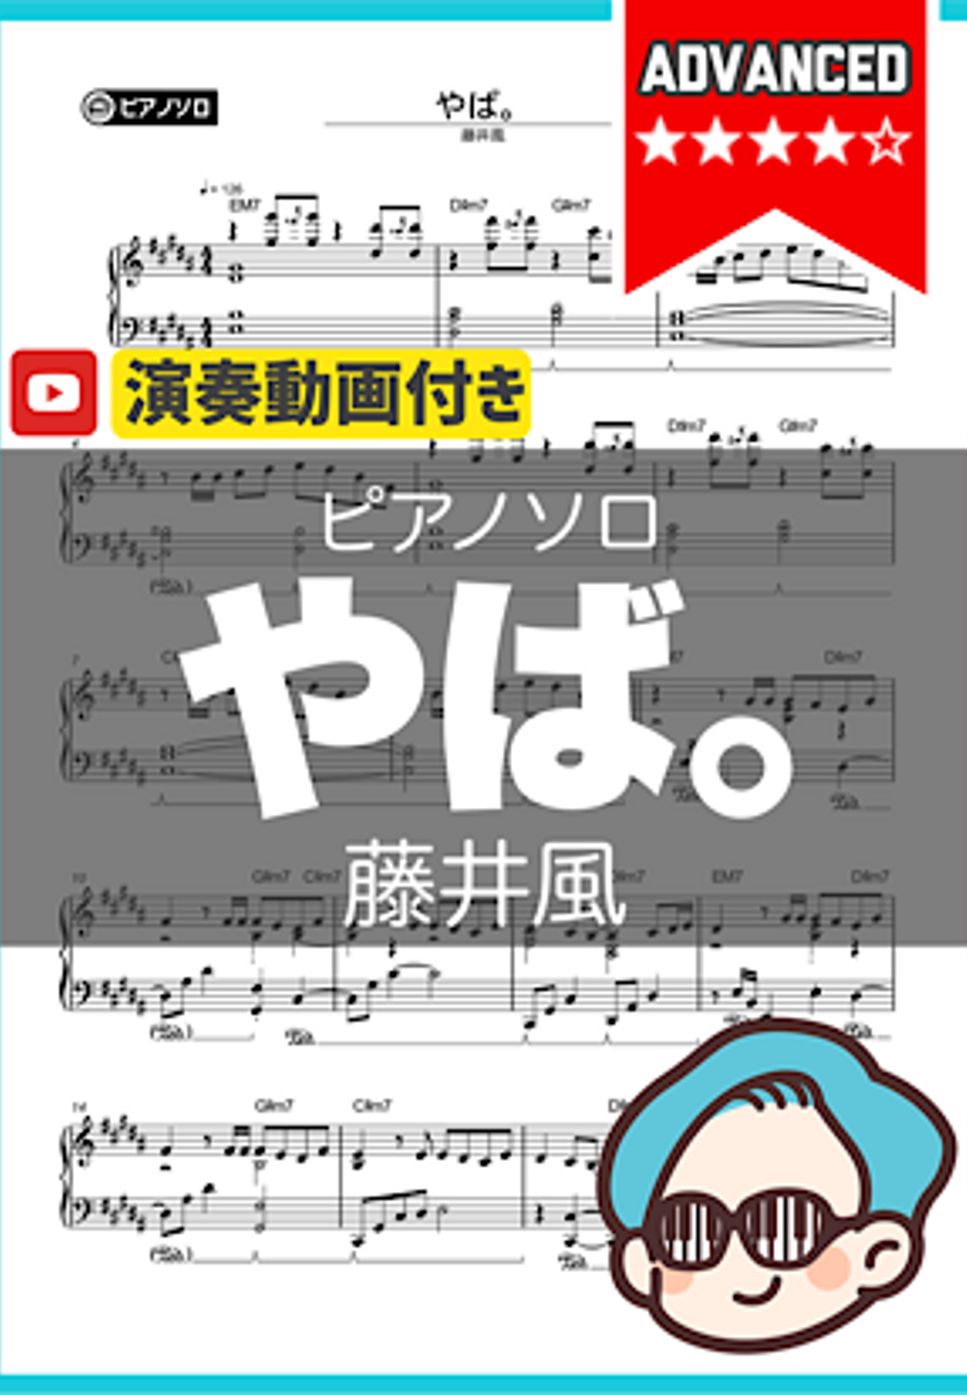 藤井風 - やば。 by シータピアノ